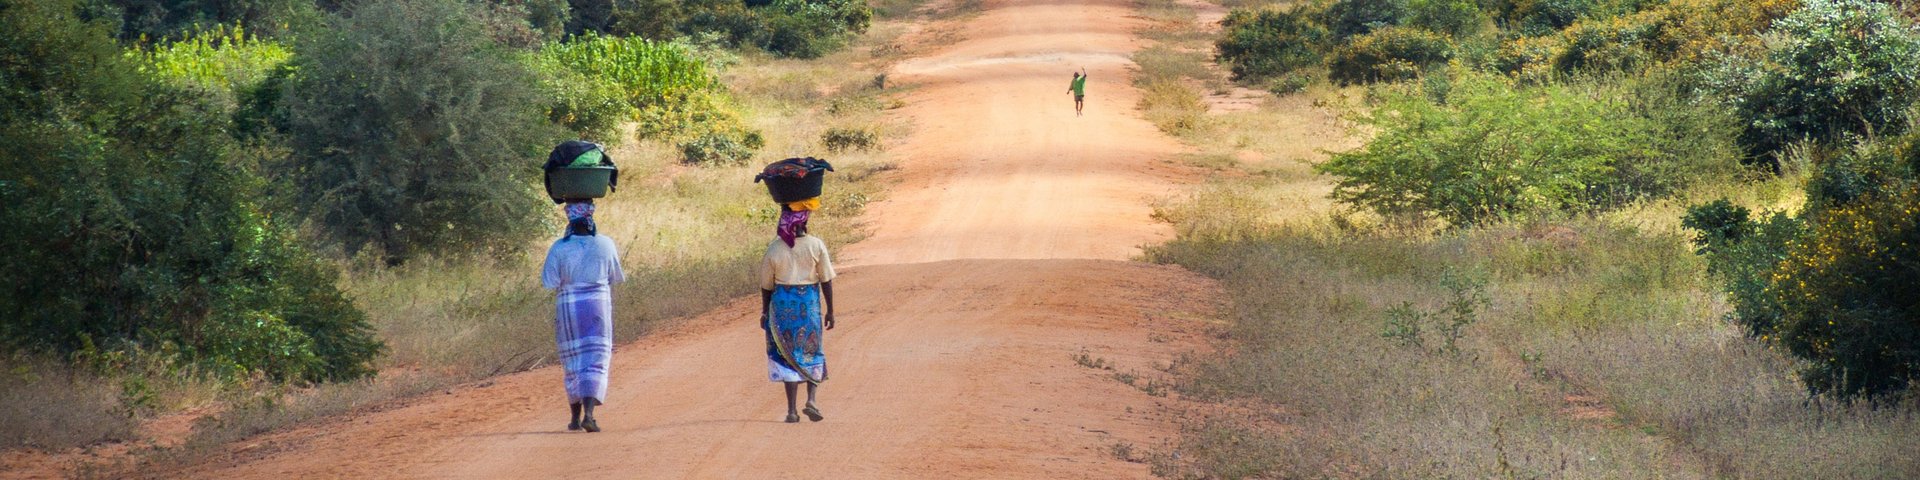 Zwei einheimische Frauen gehen auf einer Naturstrasse in Mosambik